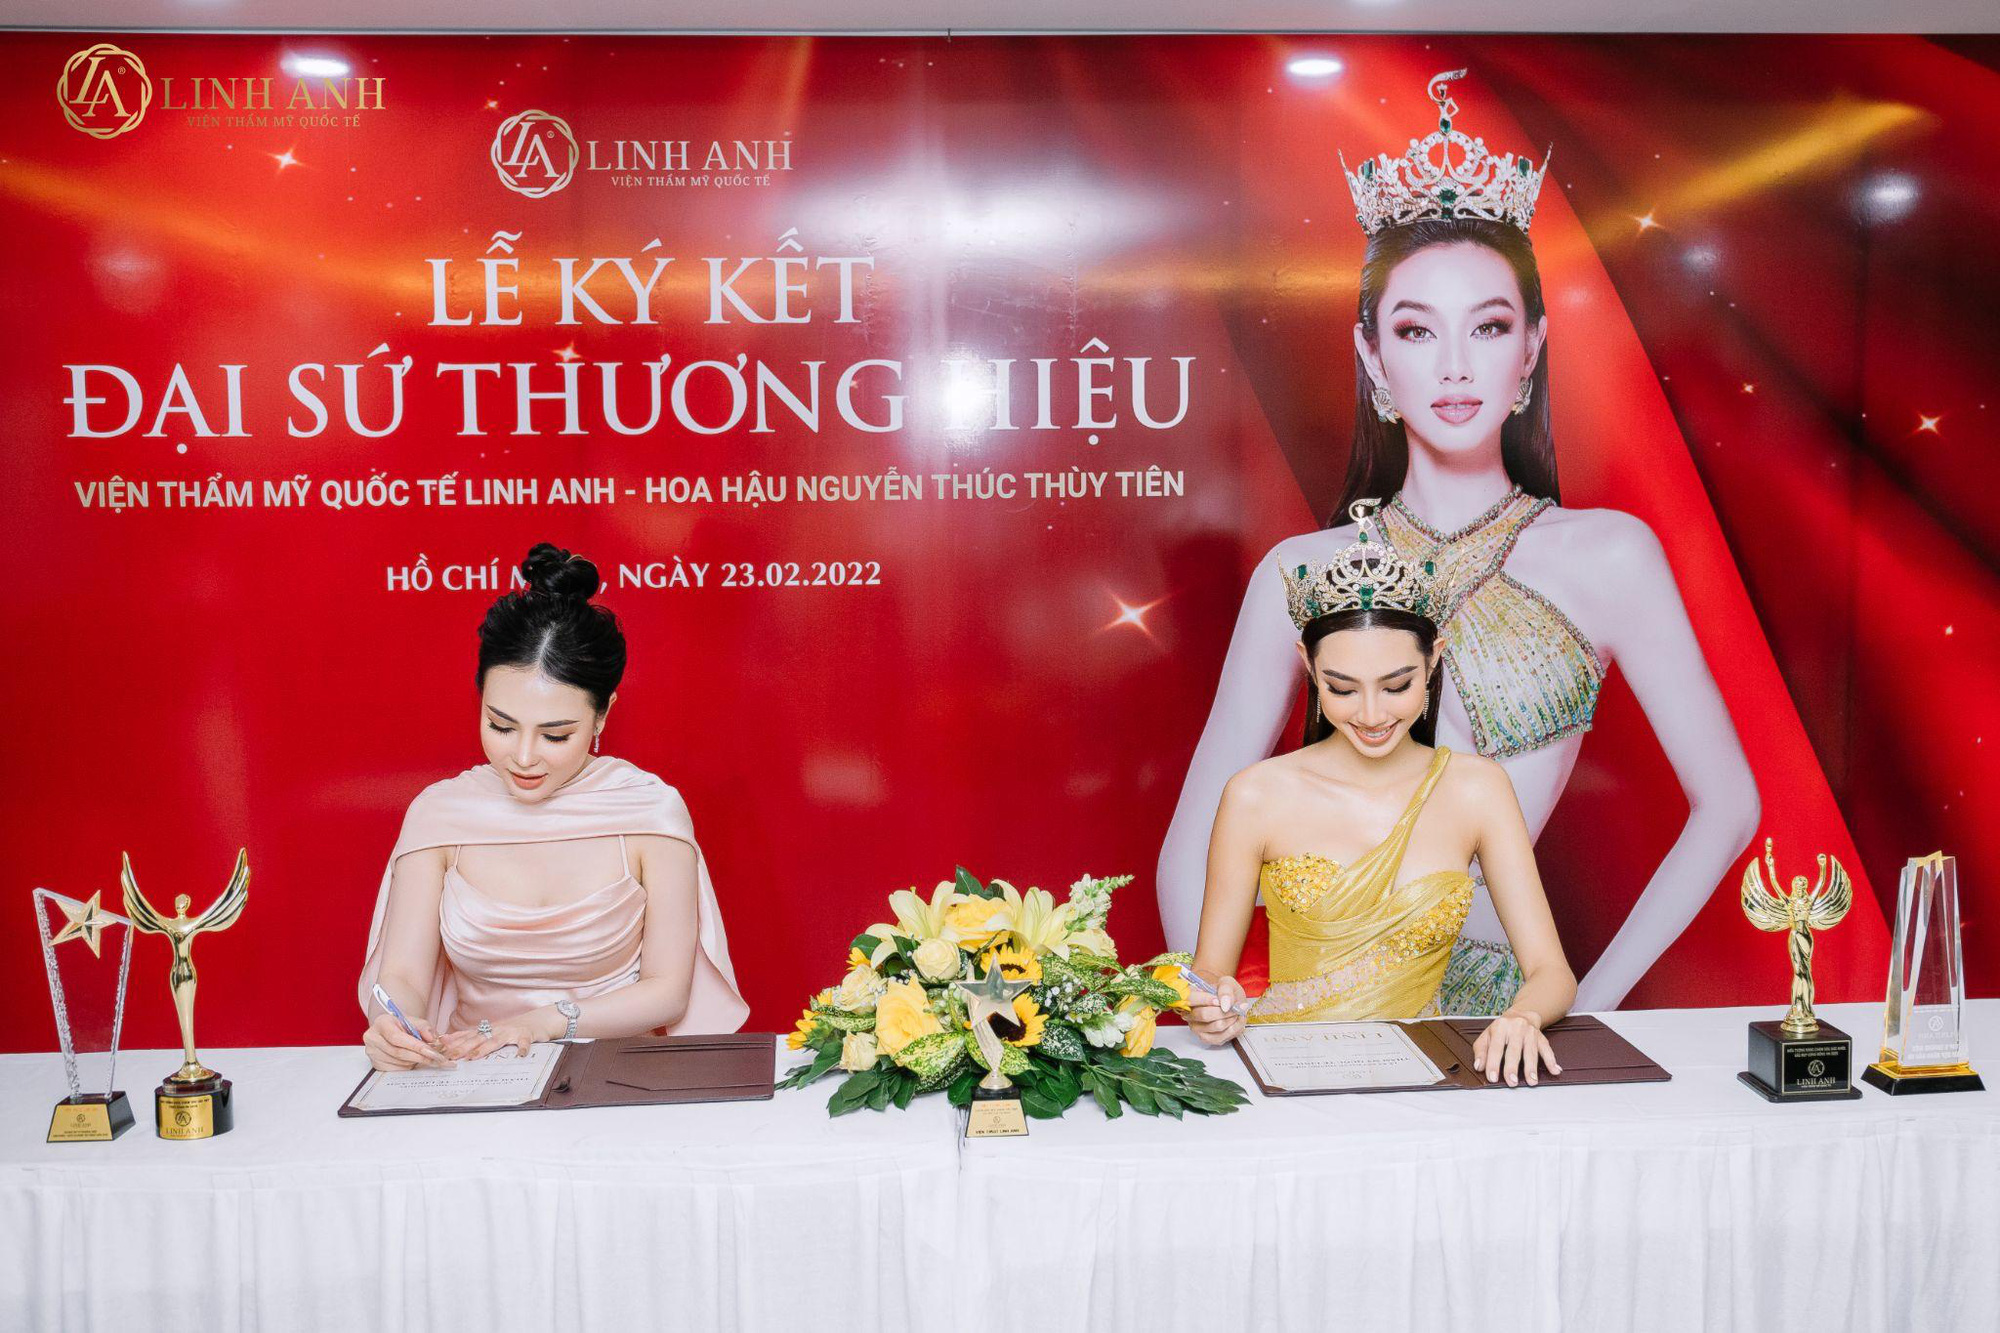 Bất ngờ trước lý do khiến Hoa hậu Thùy Tiên chọn Thẩm Mỹ Quốc Tế Linh Anh làm đại sứ thương hiệu - Ảnh 1.